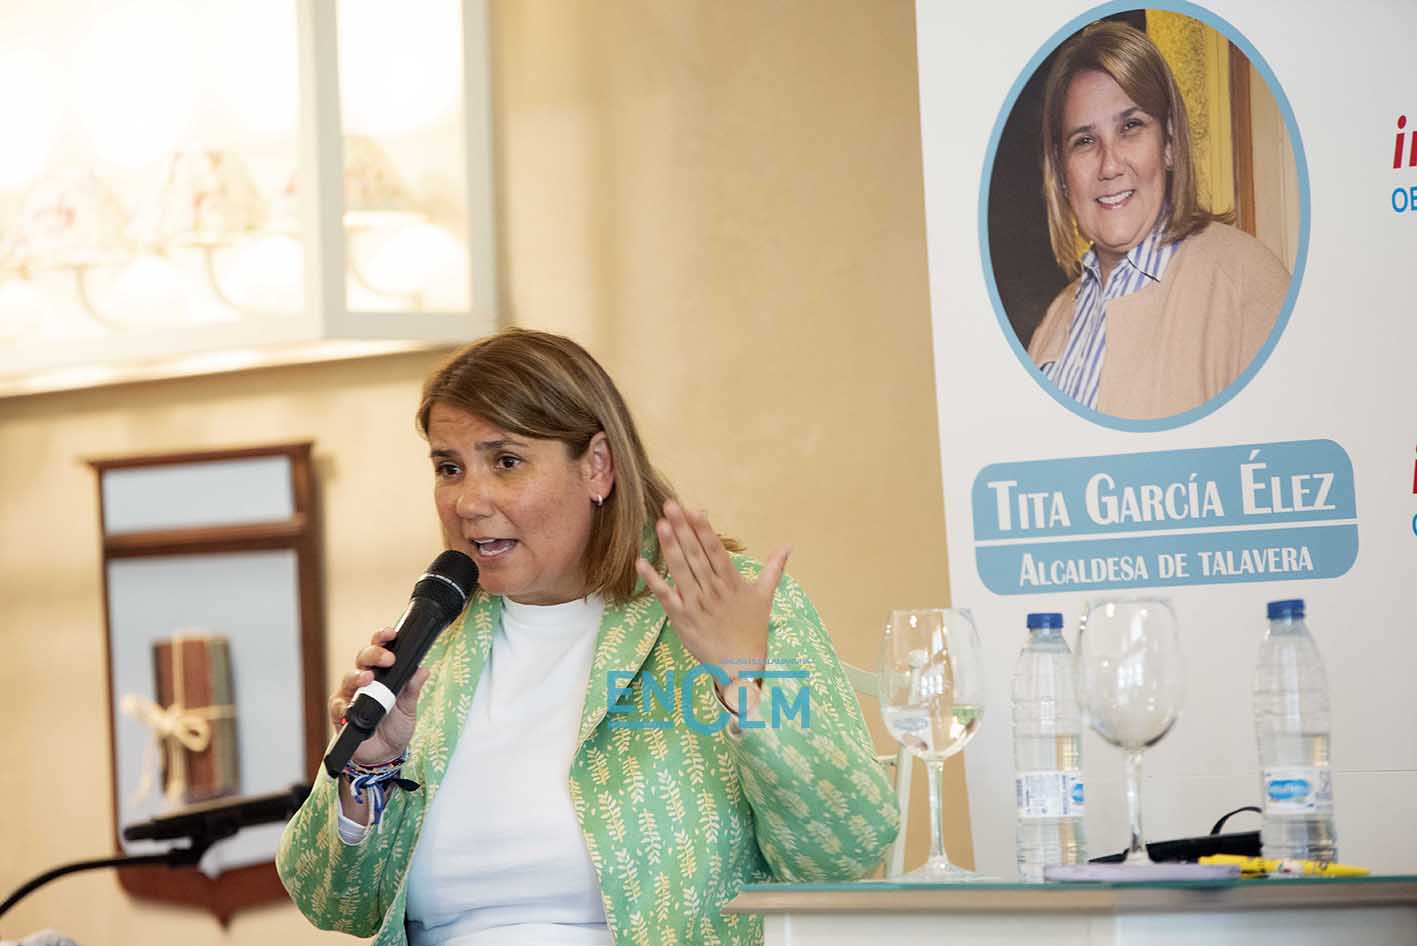 Tita García Élez, alcaldesa de Talavera, en el "Espacio Reservado" de ENCLM. Foto: Rebeca Arango.